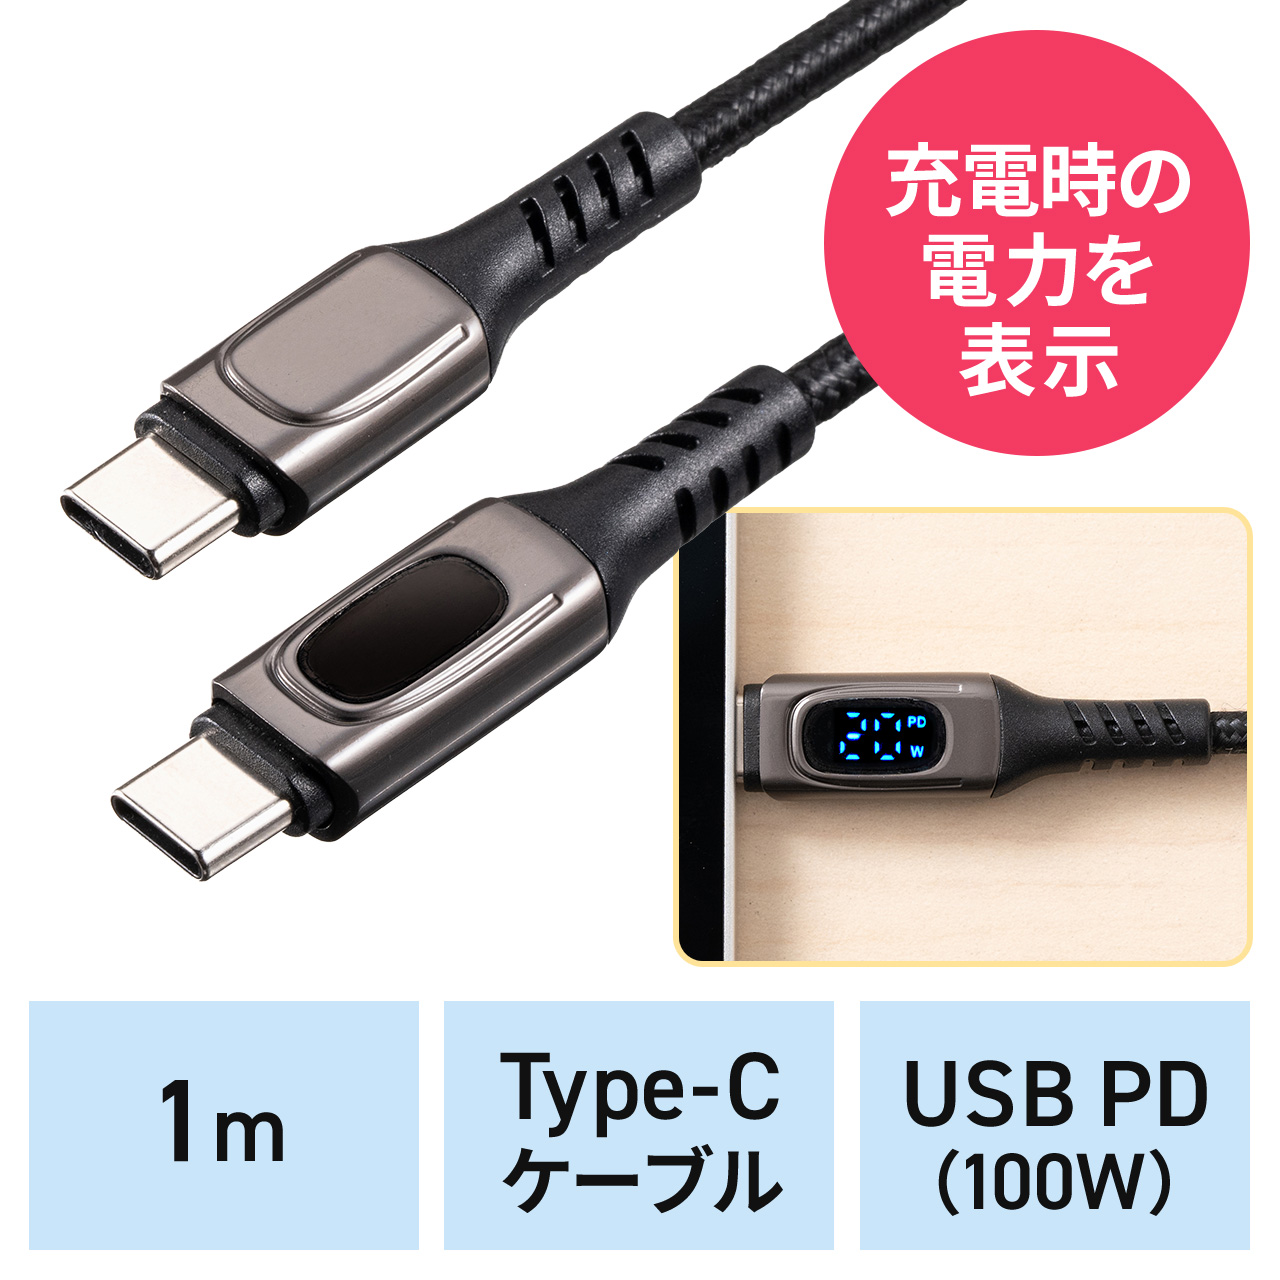 PD電力表示機能付き USB Type-Cケーブル PD100W対応 e-marker搭載 USB2.0 1m 高耐久 ポリエチレンメッシュケーブル  充電 データ転送 スマホ タブレット ブラック 500-USB076の販売商品 通販ならサンワダイレクト